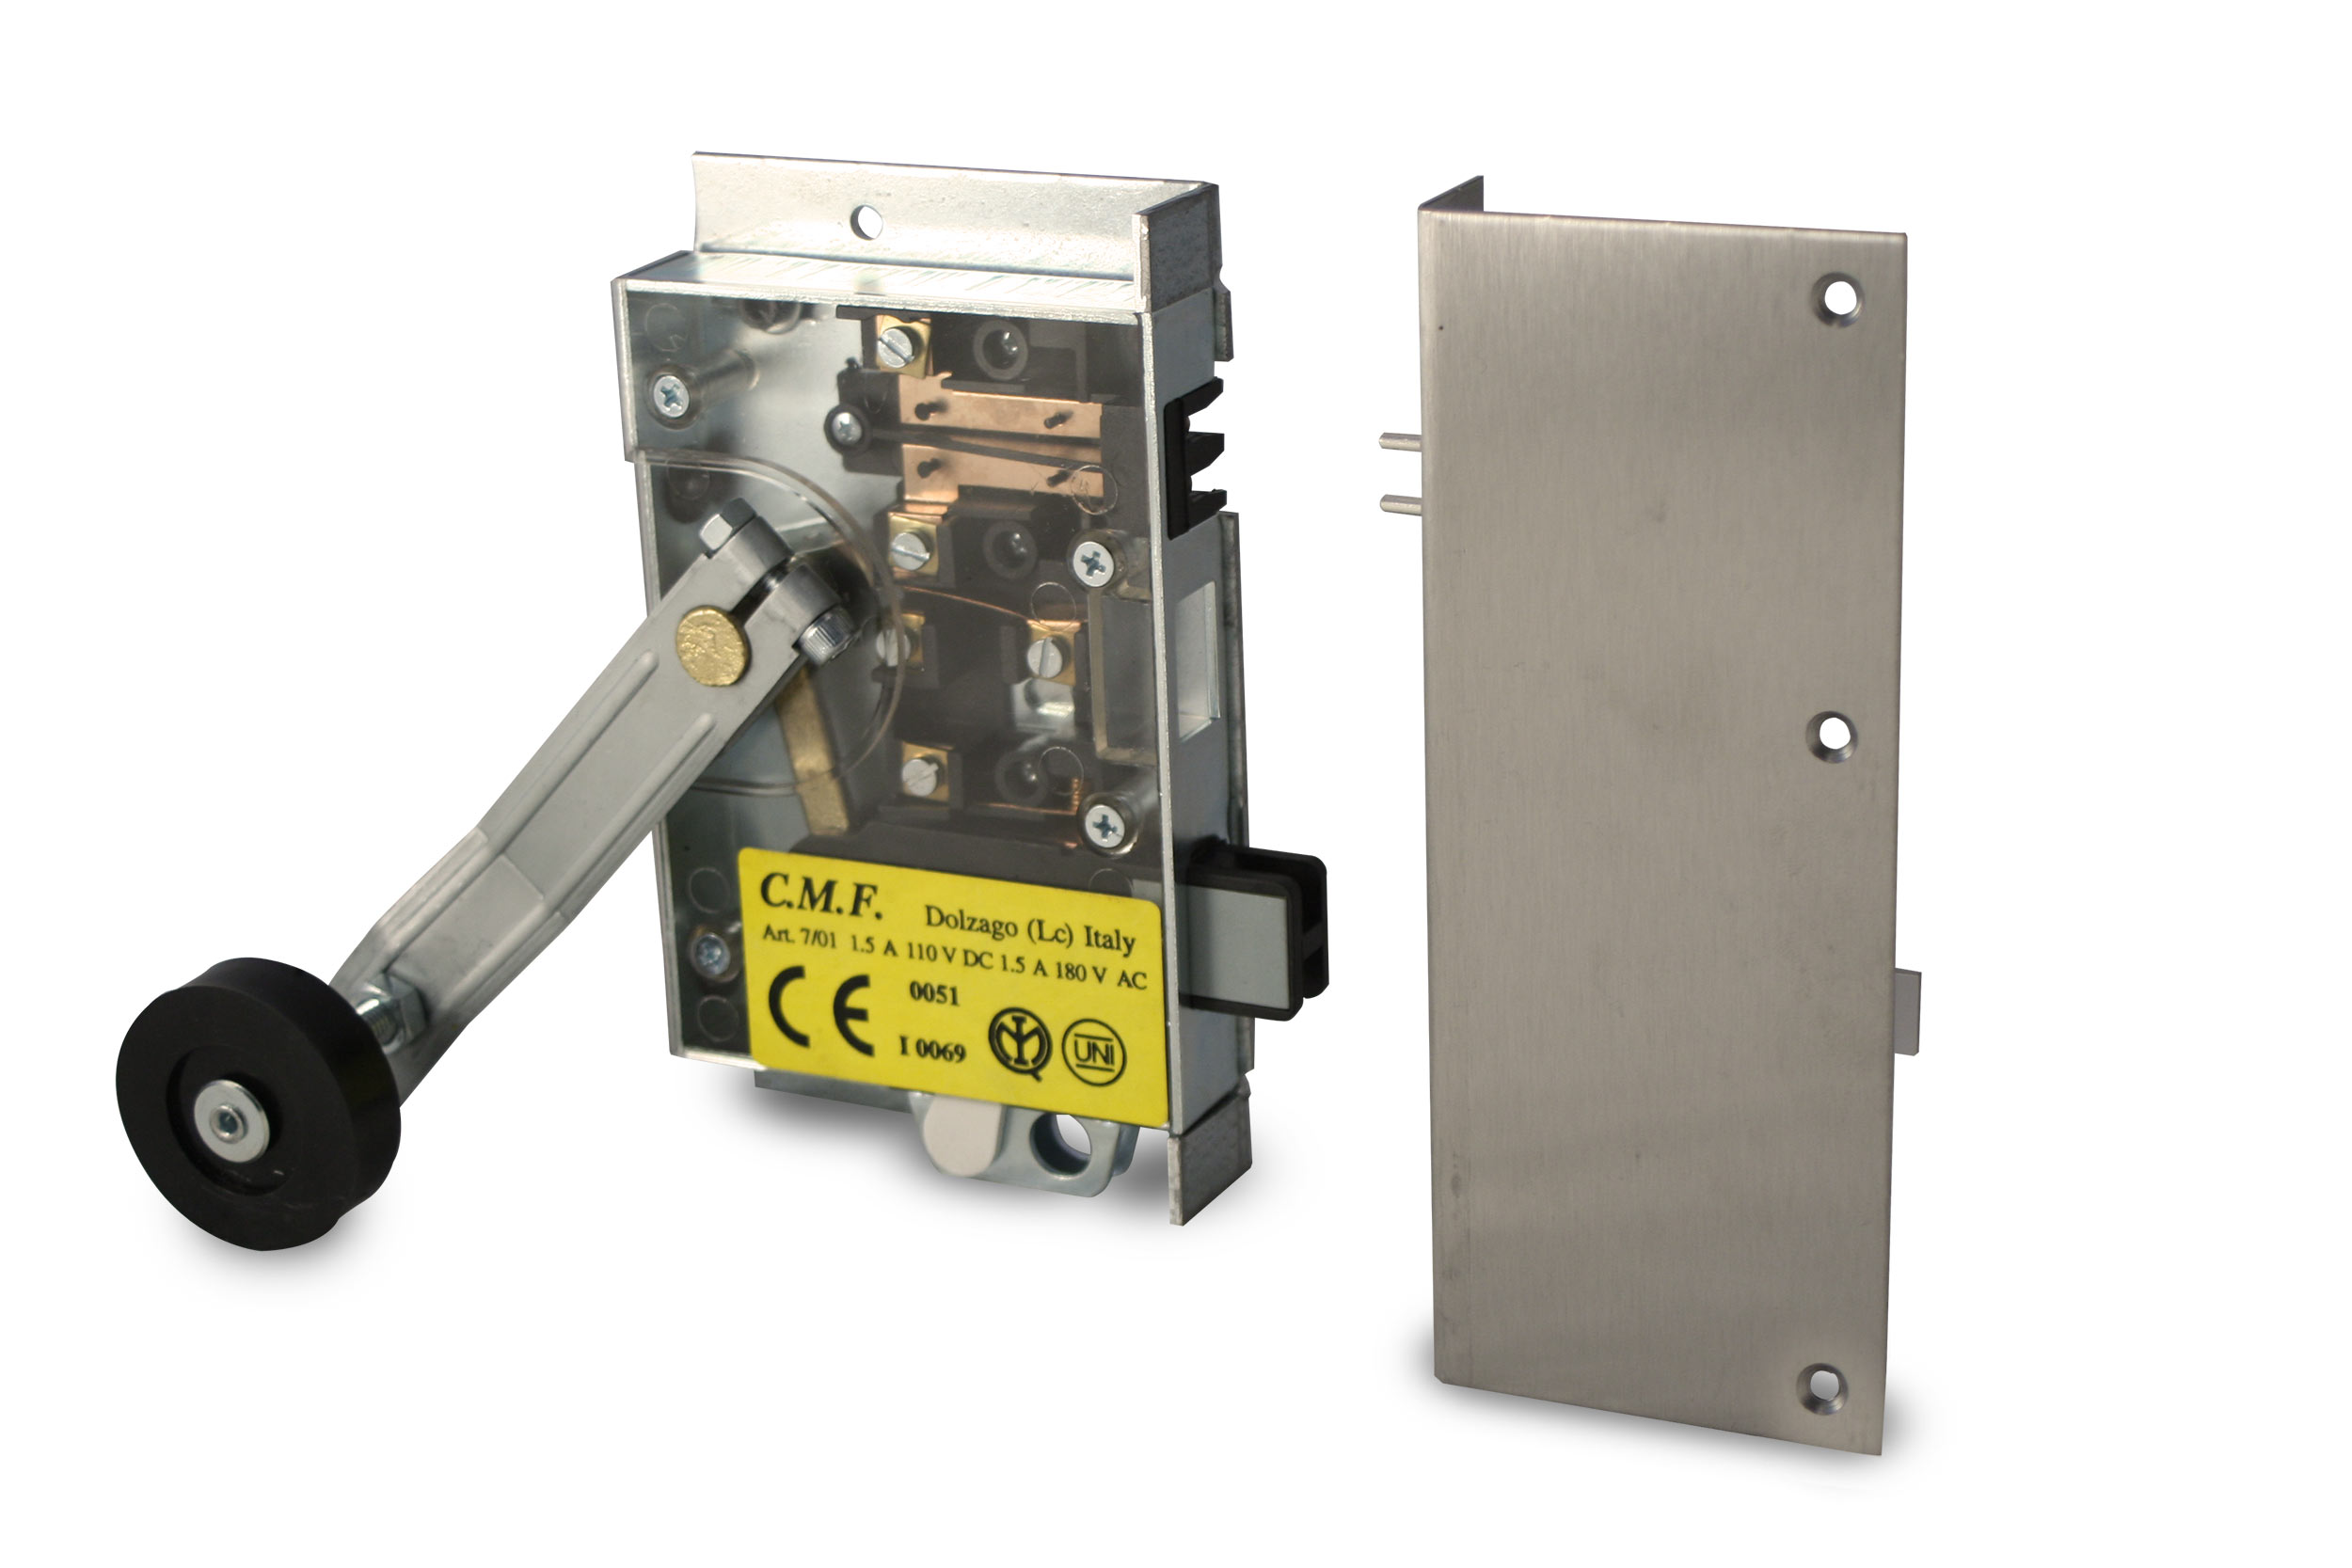 BASSETTI semi-automatic certified lock replacement kit